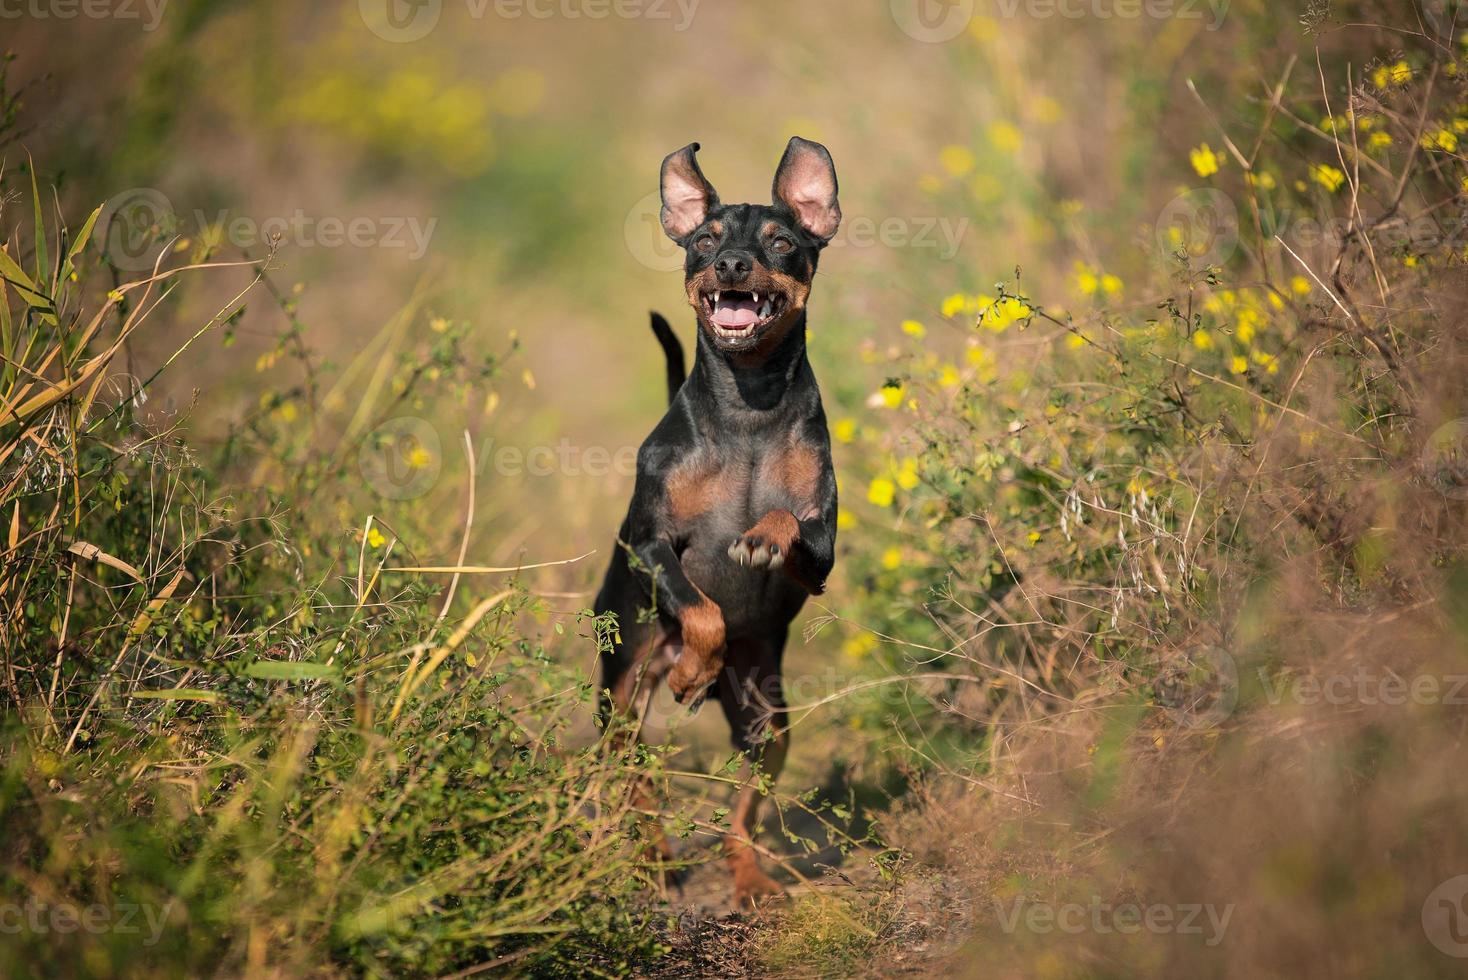 race de pinscher nain chien heureux sautant dans l'herbe par une journée ensoleillée photo